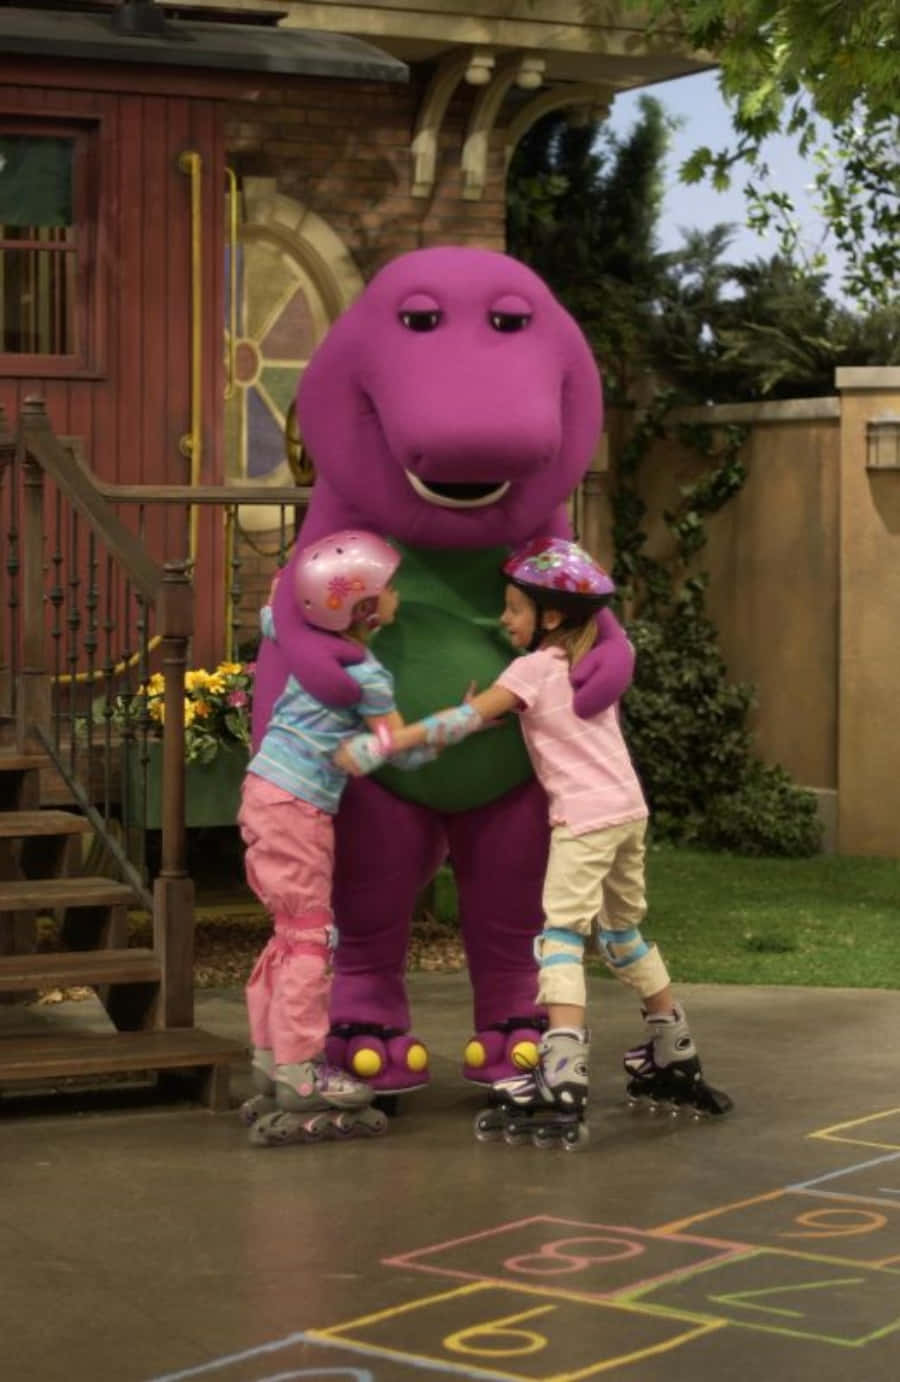 Imaginandolas Posibilidades Con Barney